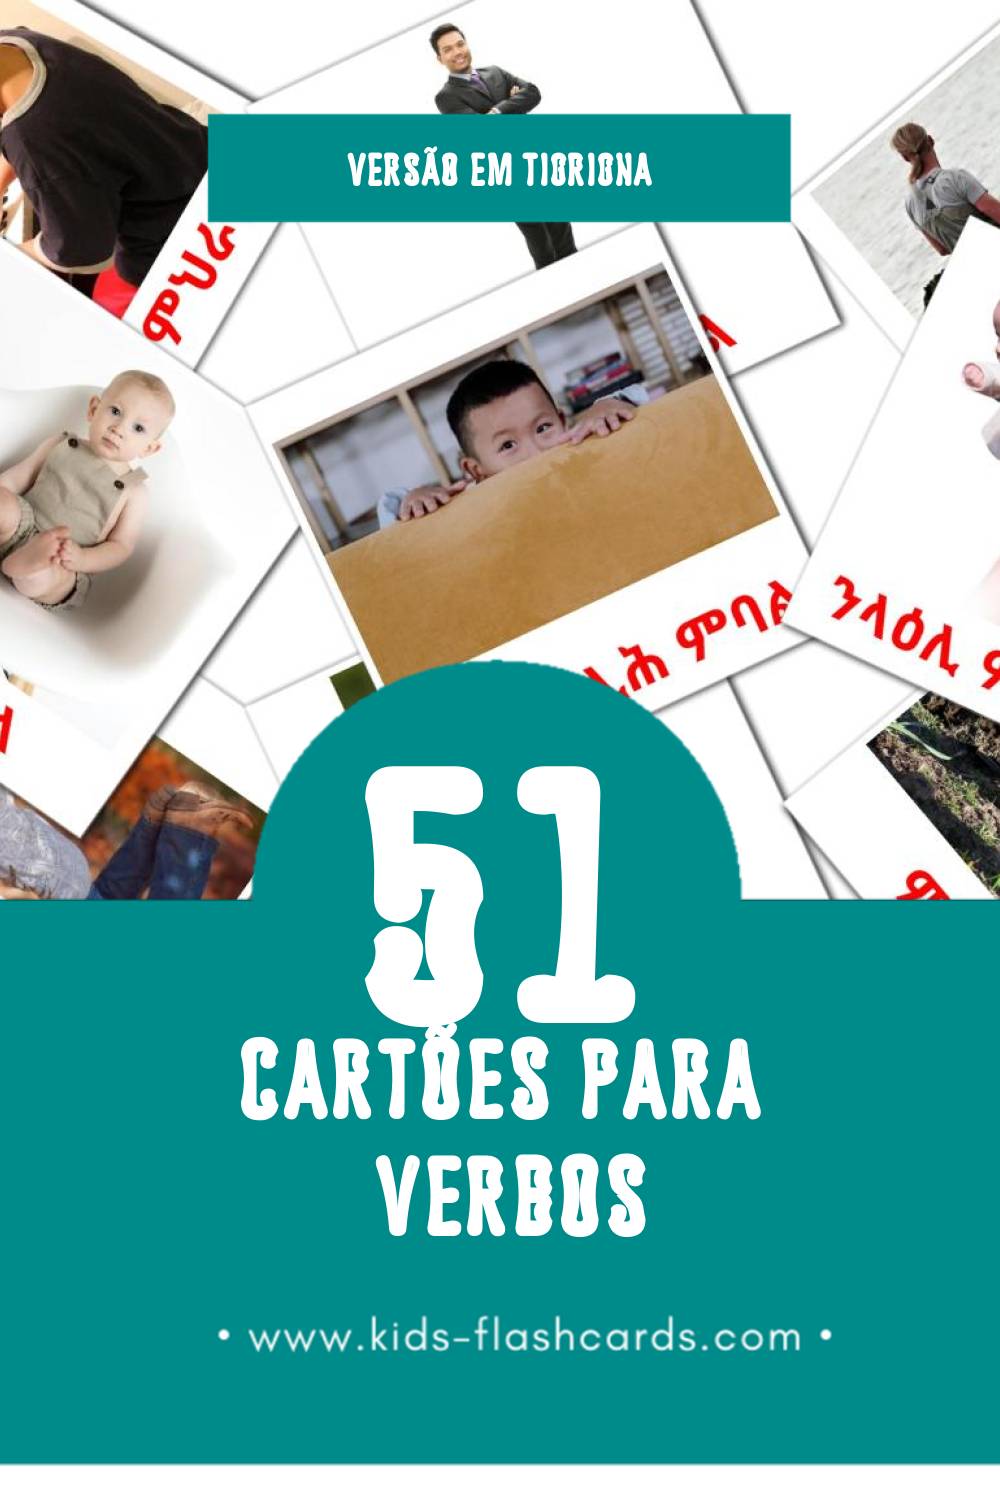 Flashcards de ግሲ Visuais para Toddlers (51 cartões em Tigrigna)